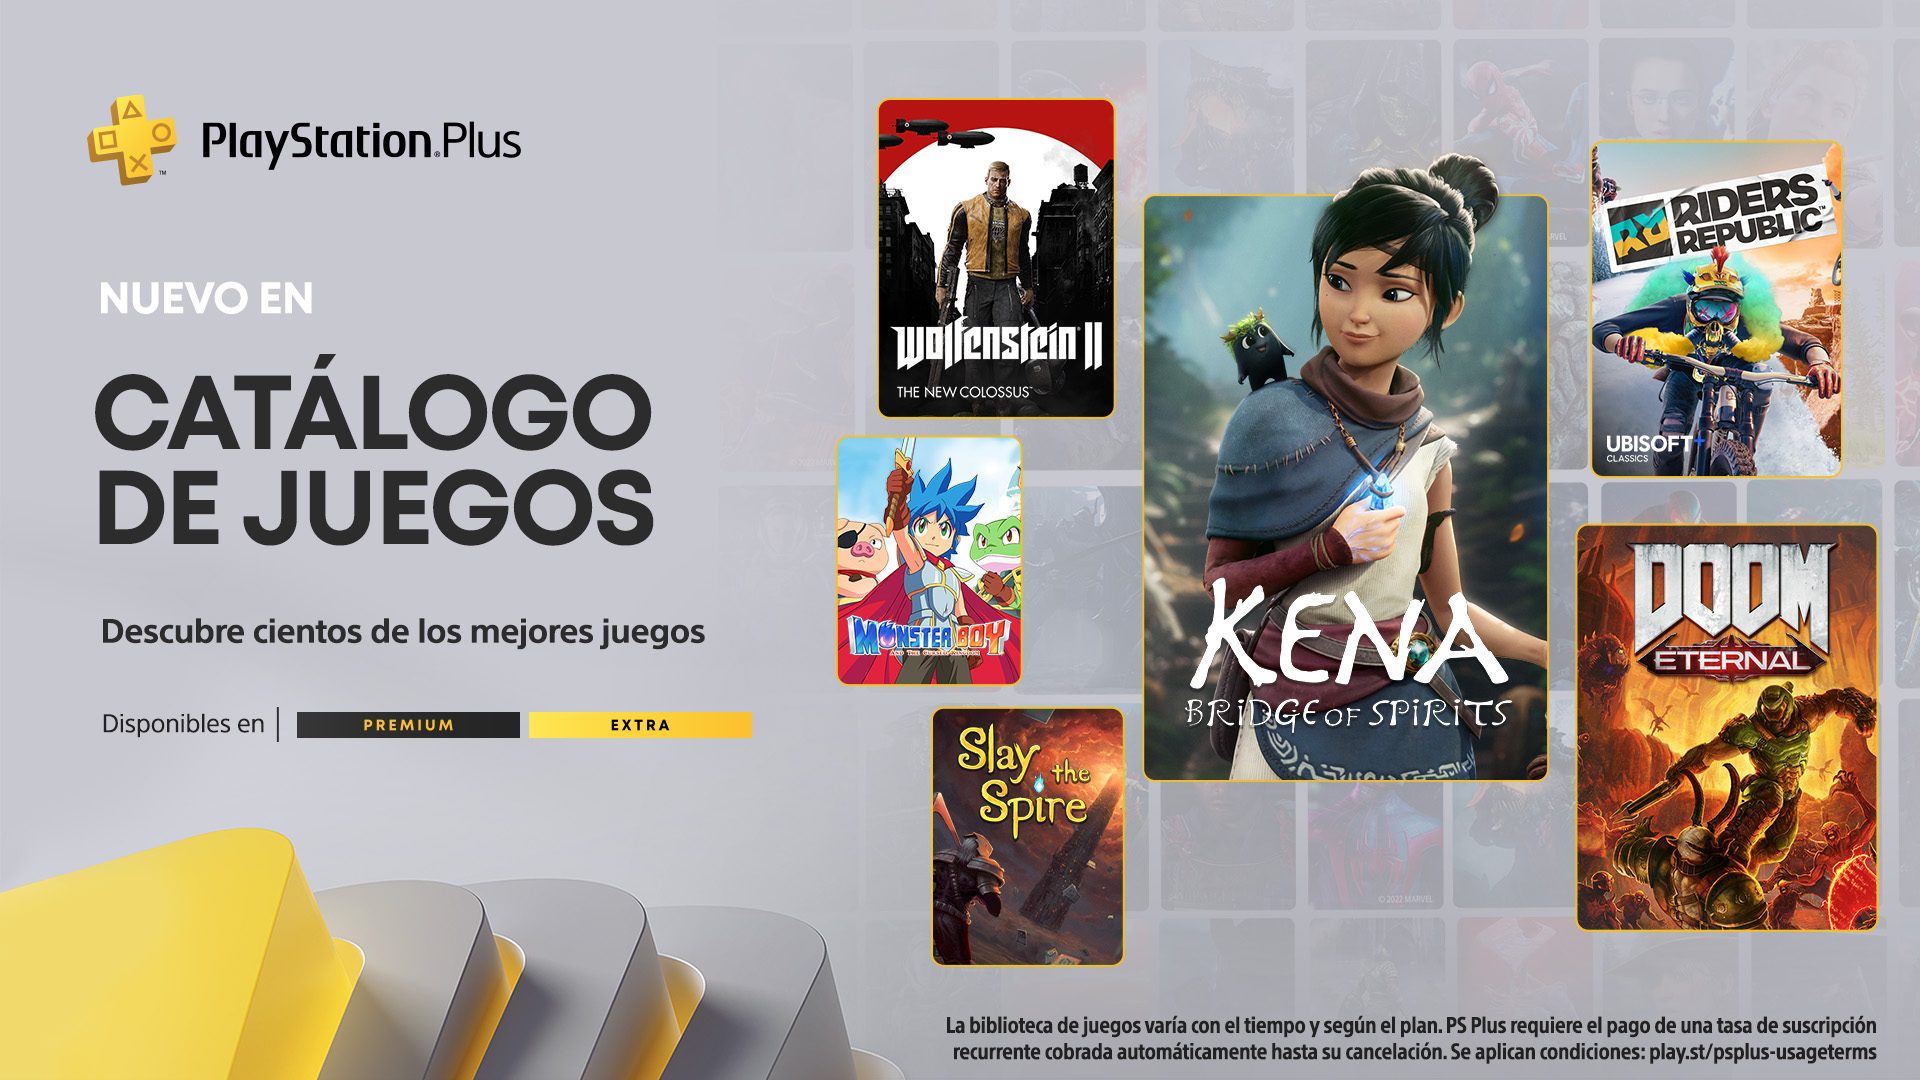 El catálogo de juegos de PlayStation Plus en abril Kena Bridge of